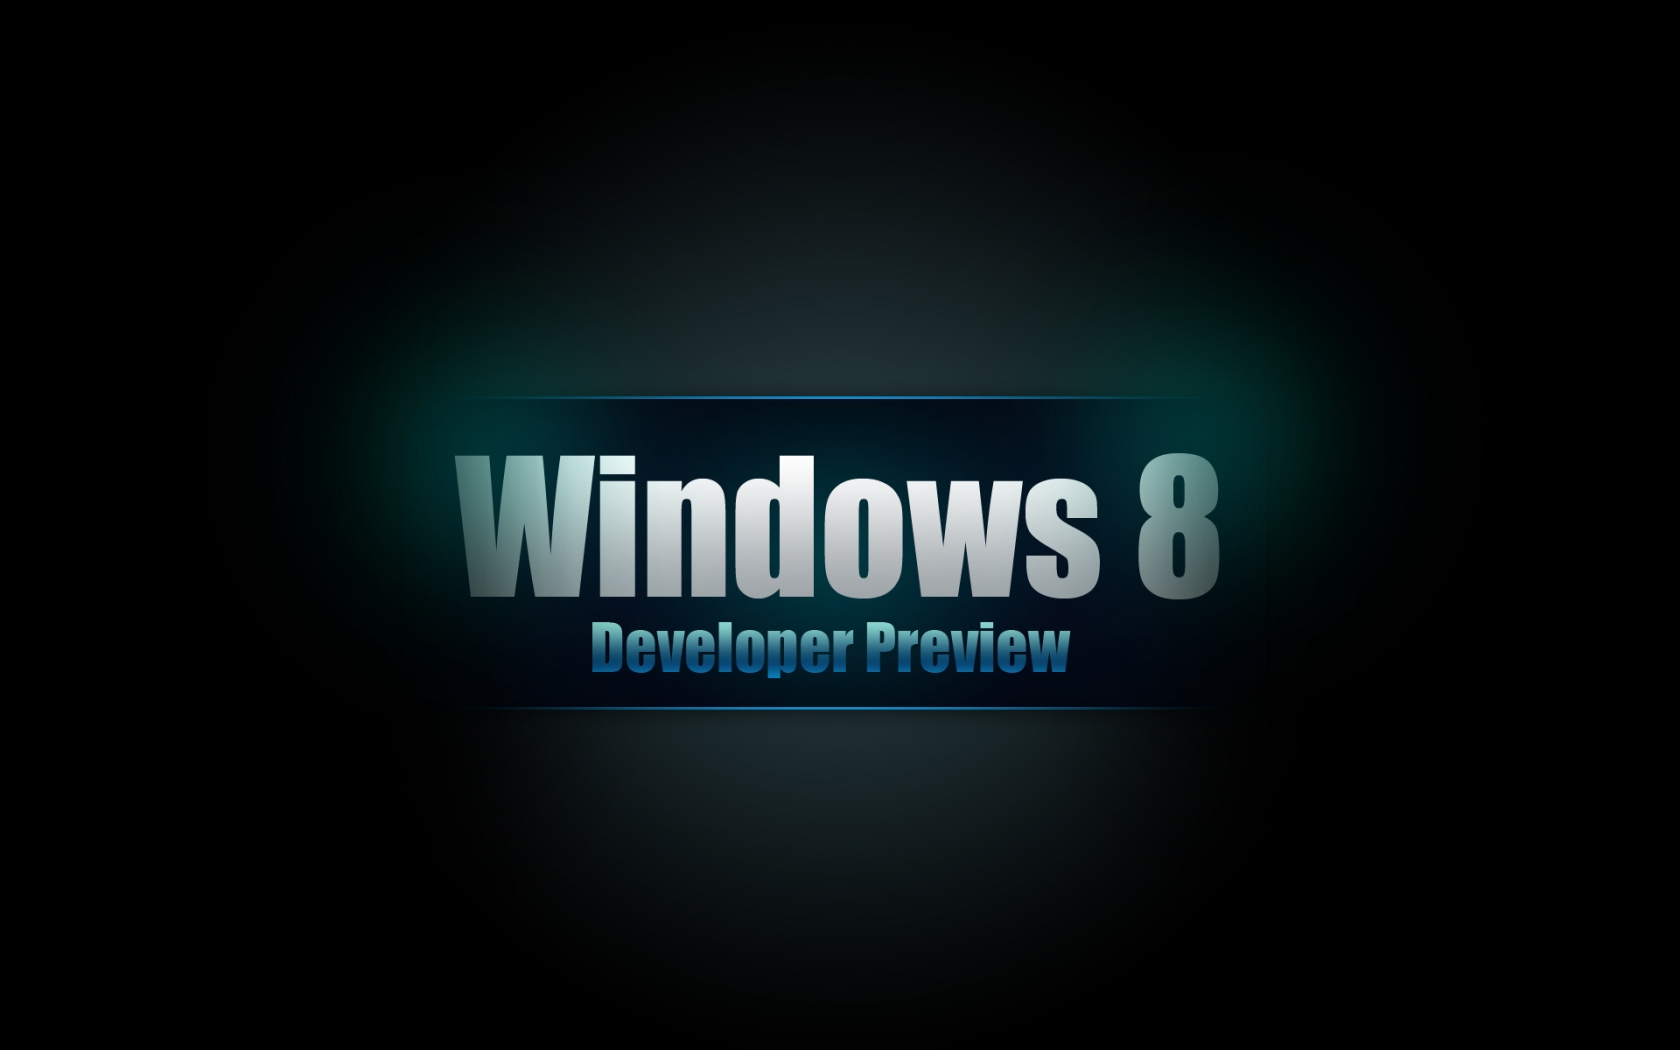 Windows 8 Developer for 1680 x 1050 widescreen resolution